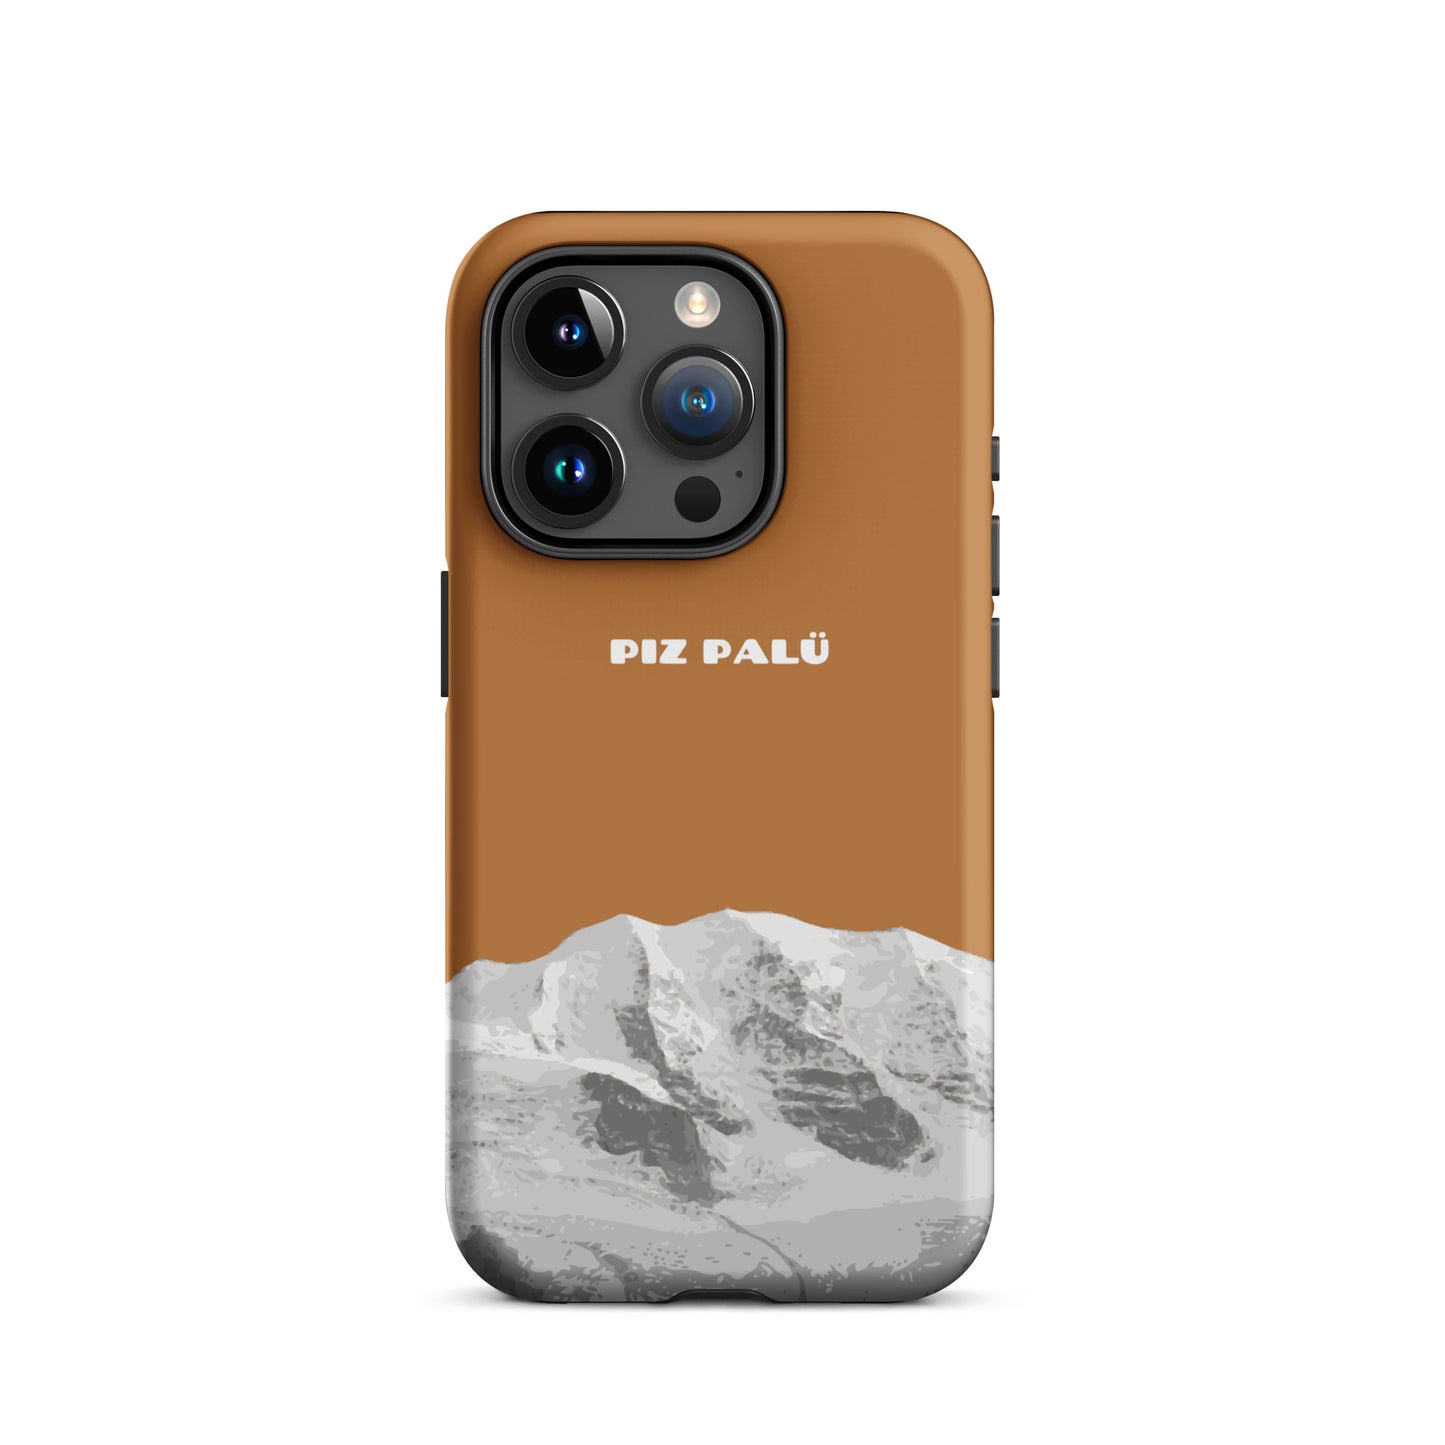 Hülle für das iPhone 15 Pro von Apple in der Farbe Kupfer, dass den Piz Palü in Graubünden zeigt.